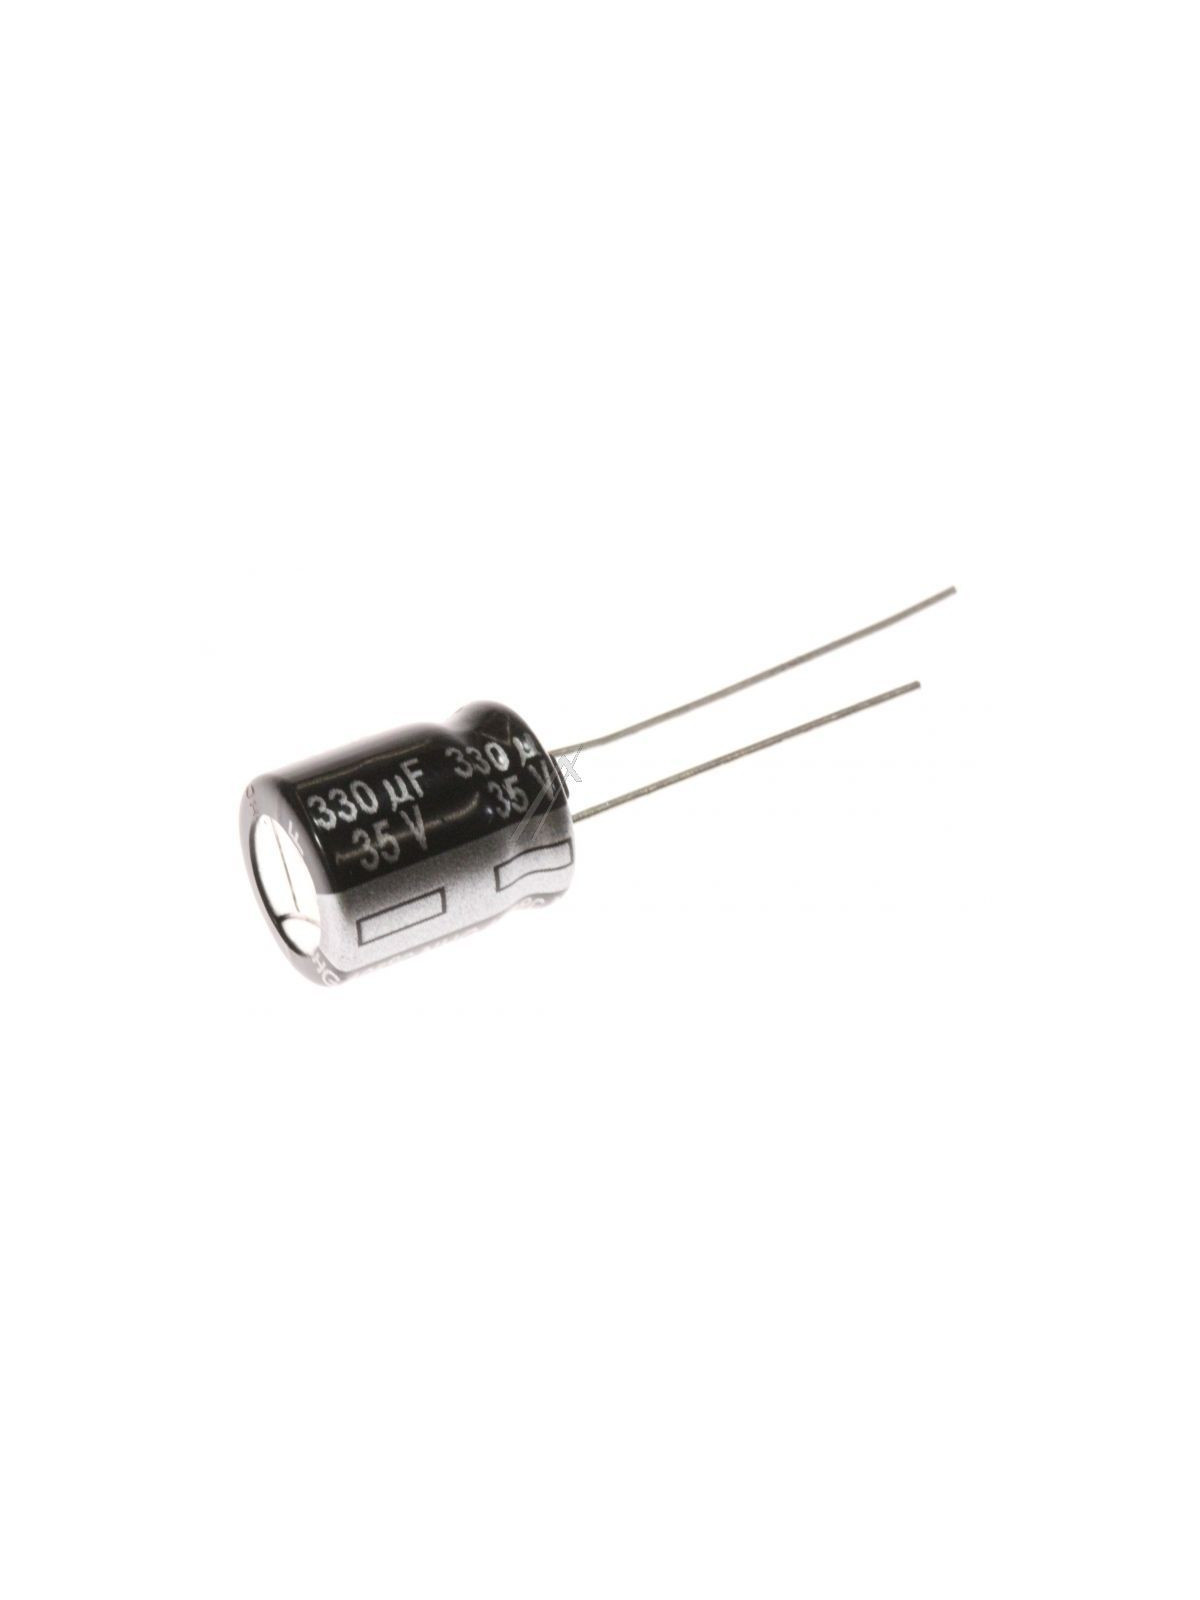 Condensateur électrolytique 330UF - 35V